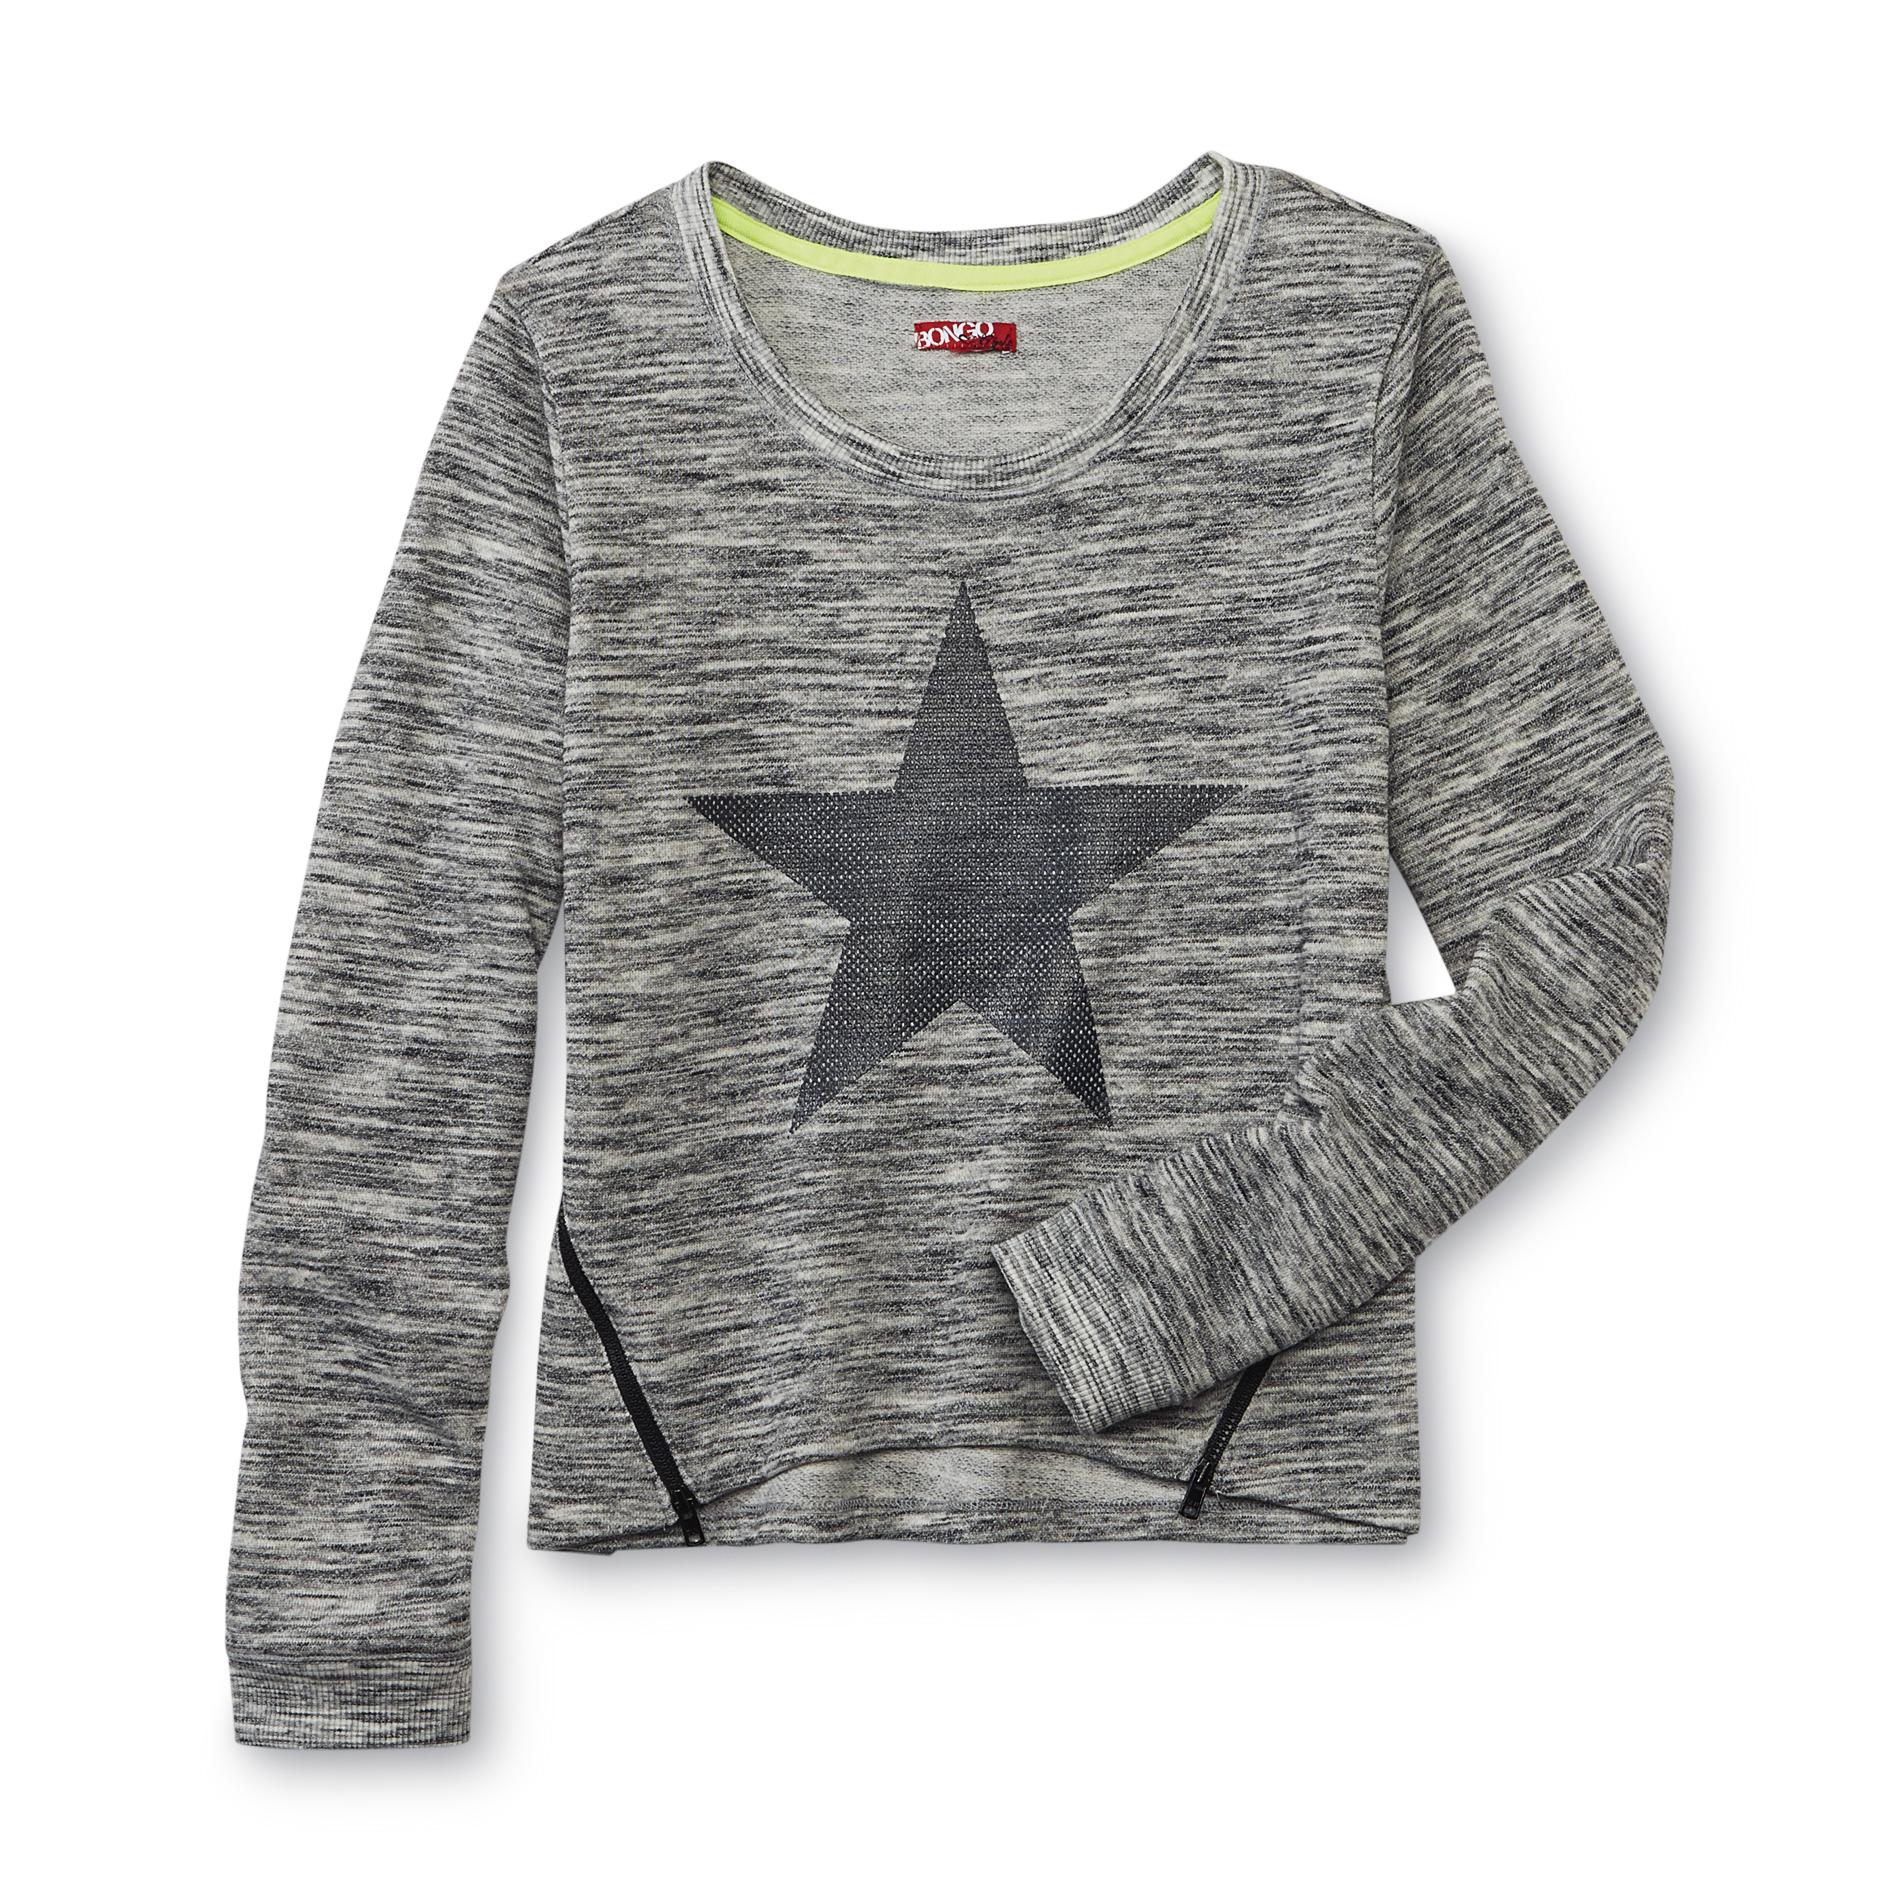 Bongo Girl's Sweatshirt - Star